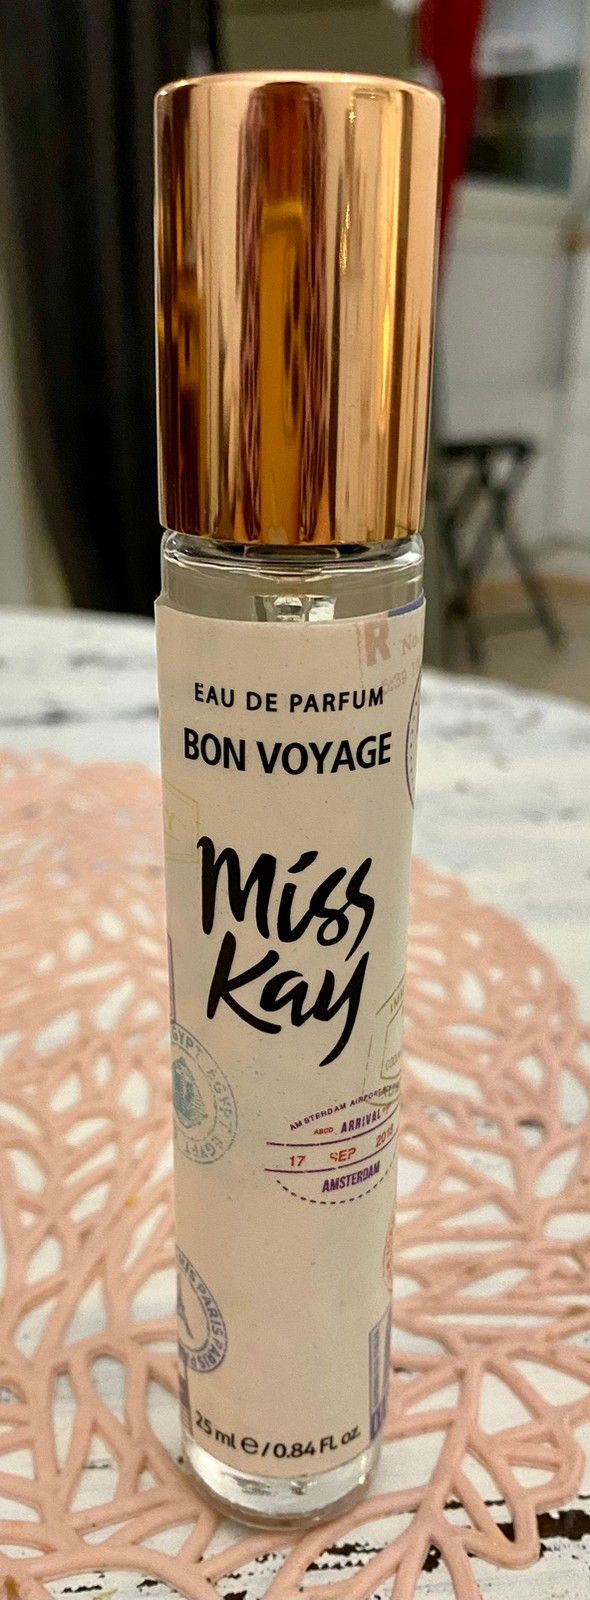 Miss Kay Bon Voyage 25 ml